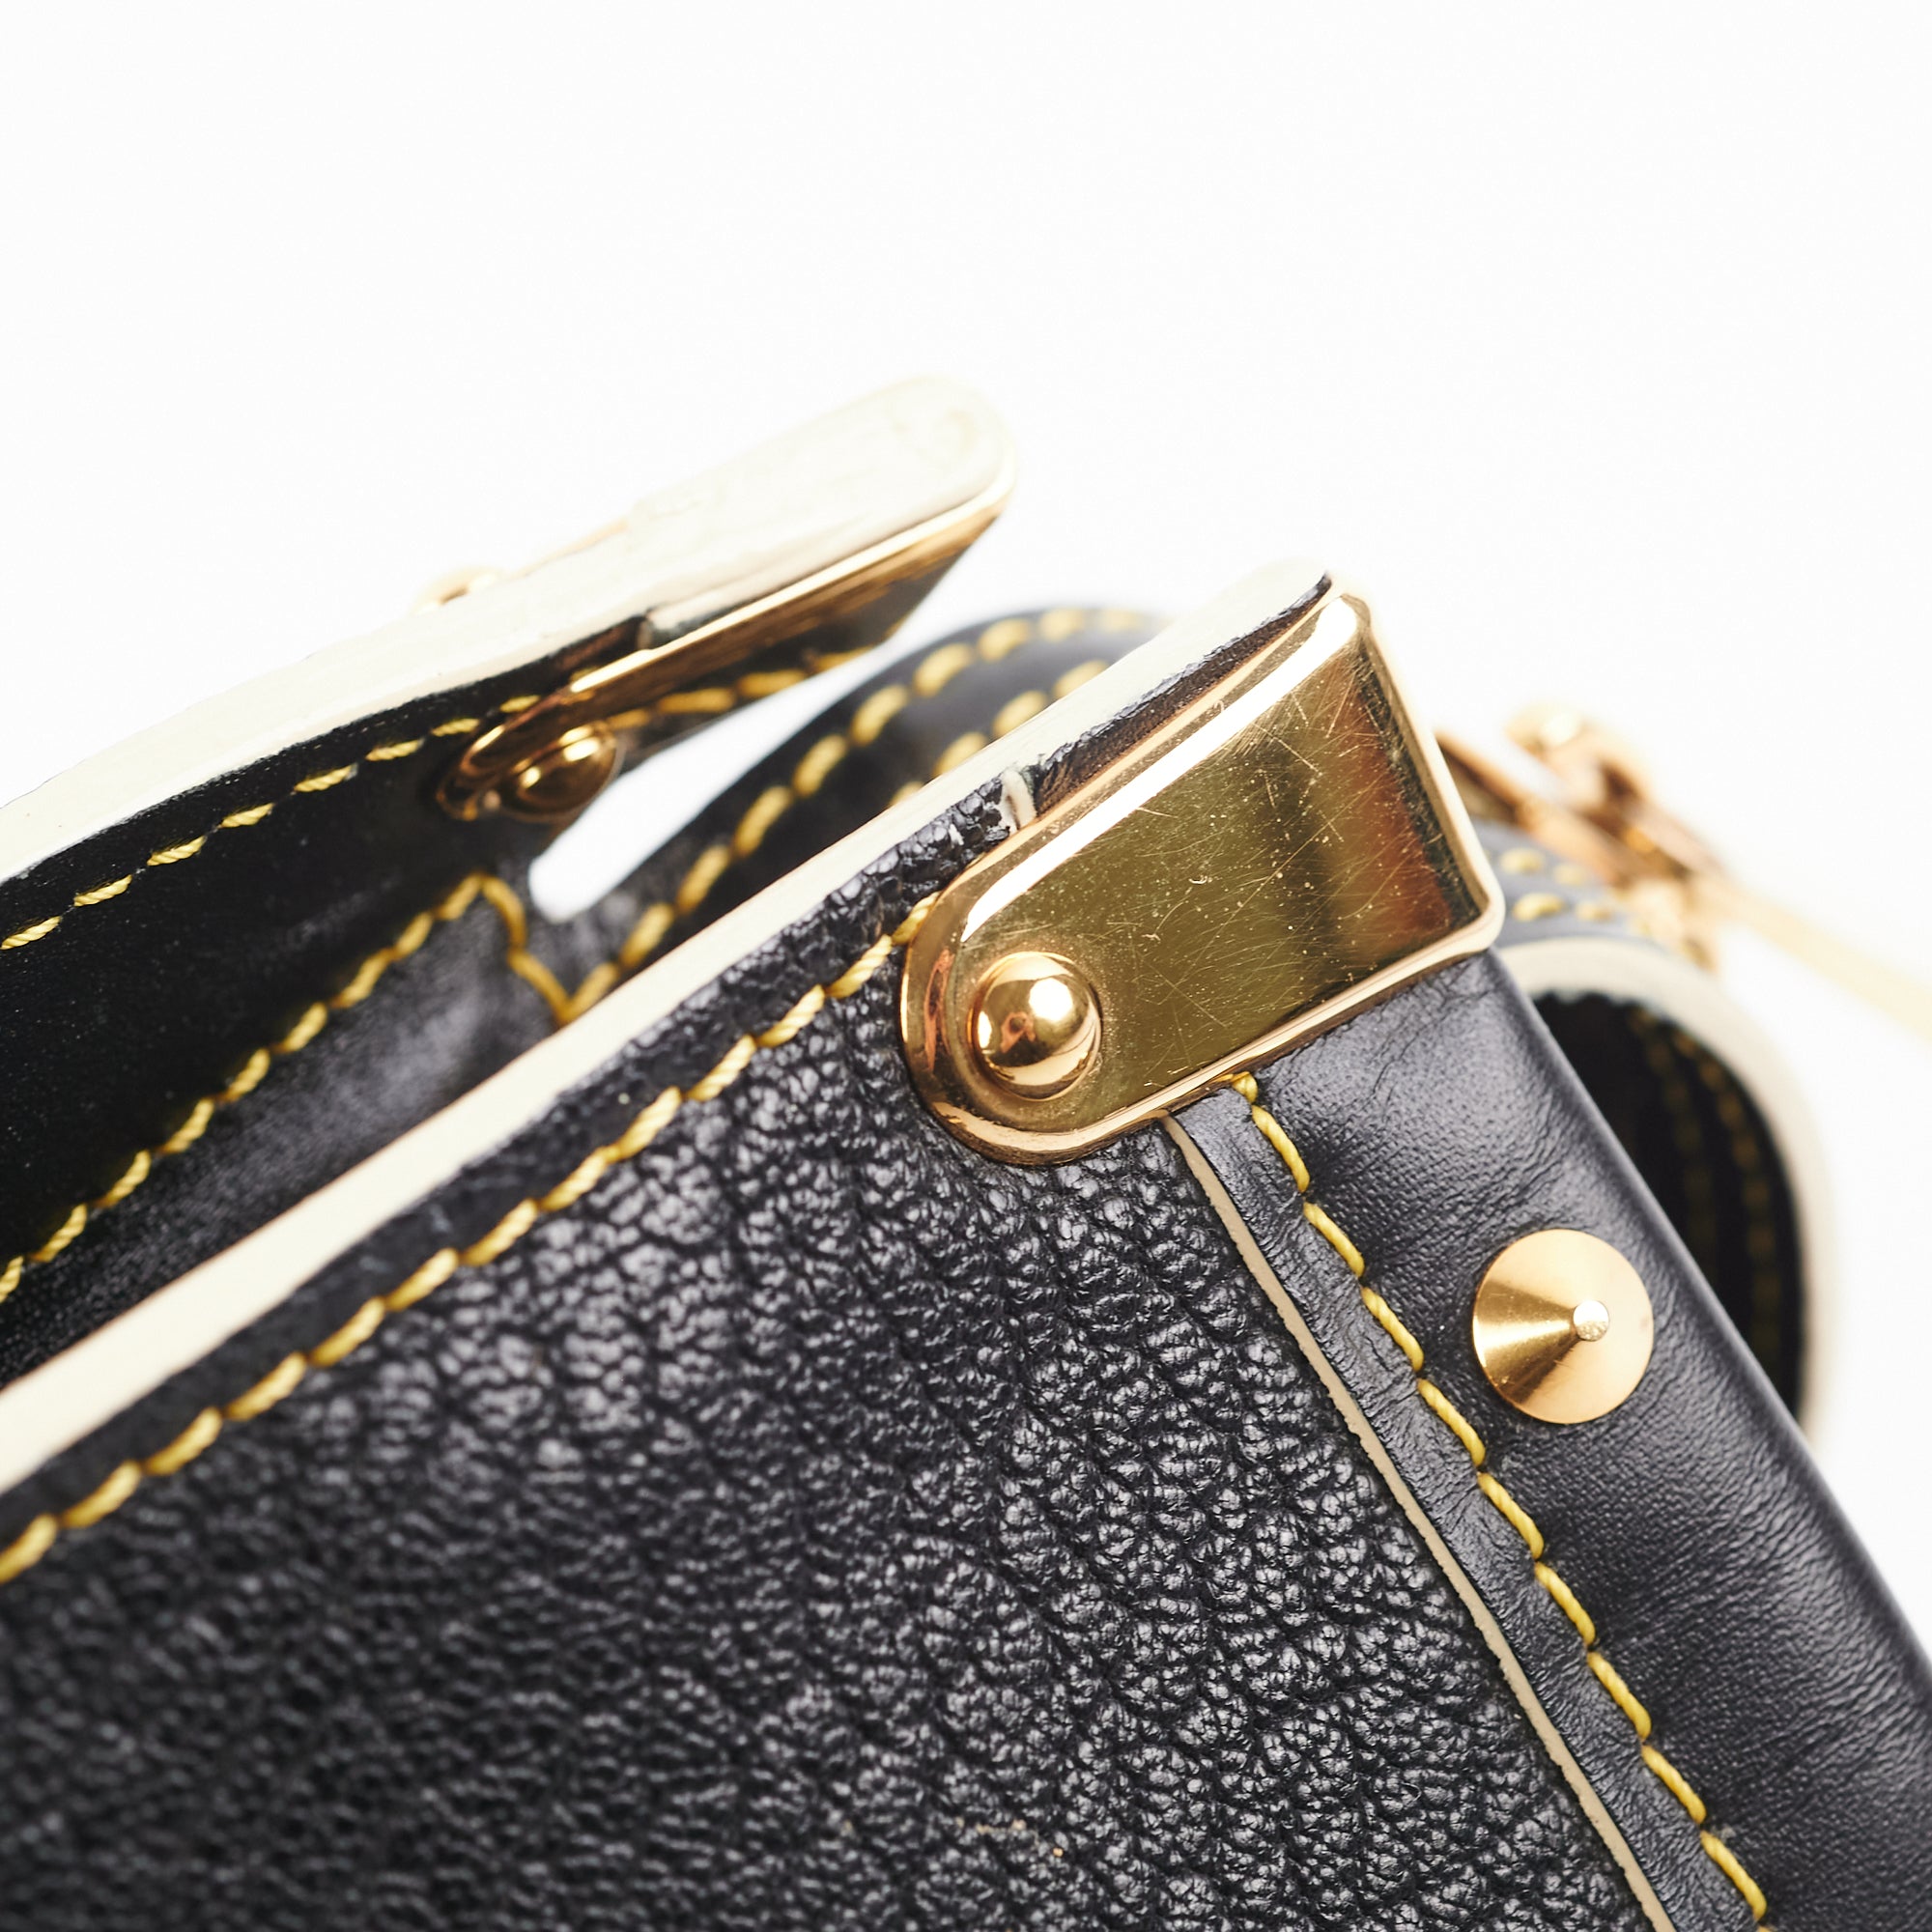 Louis Vuitton Black Suhali Leather L Epanoui GM Bag, - Depop